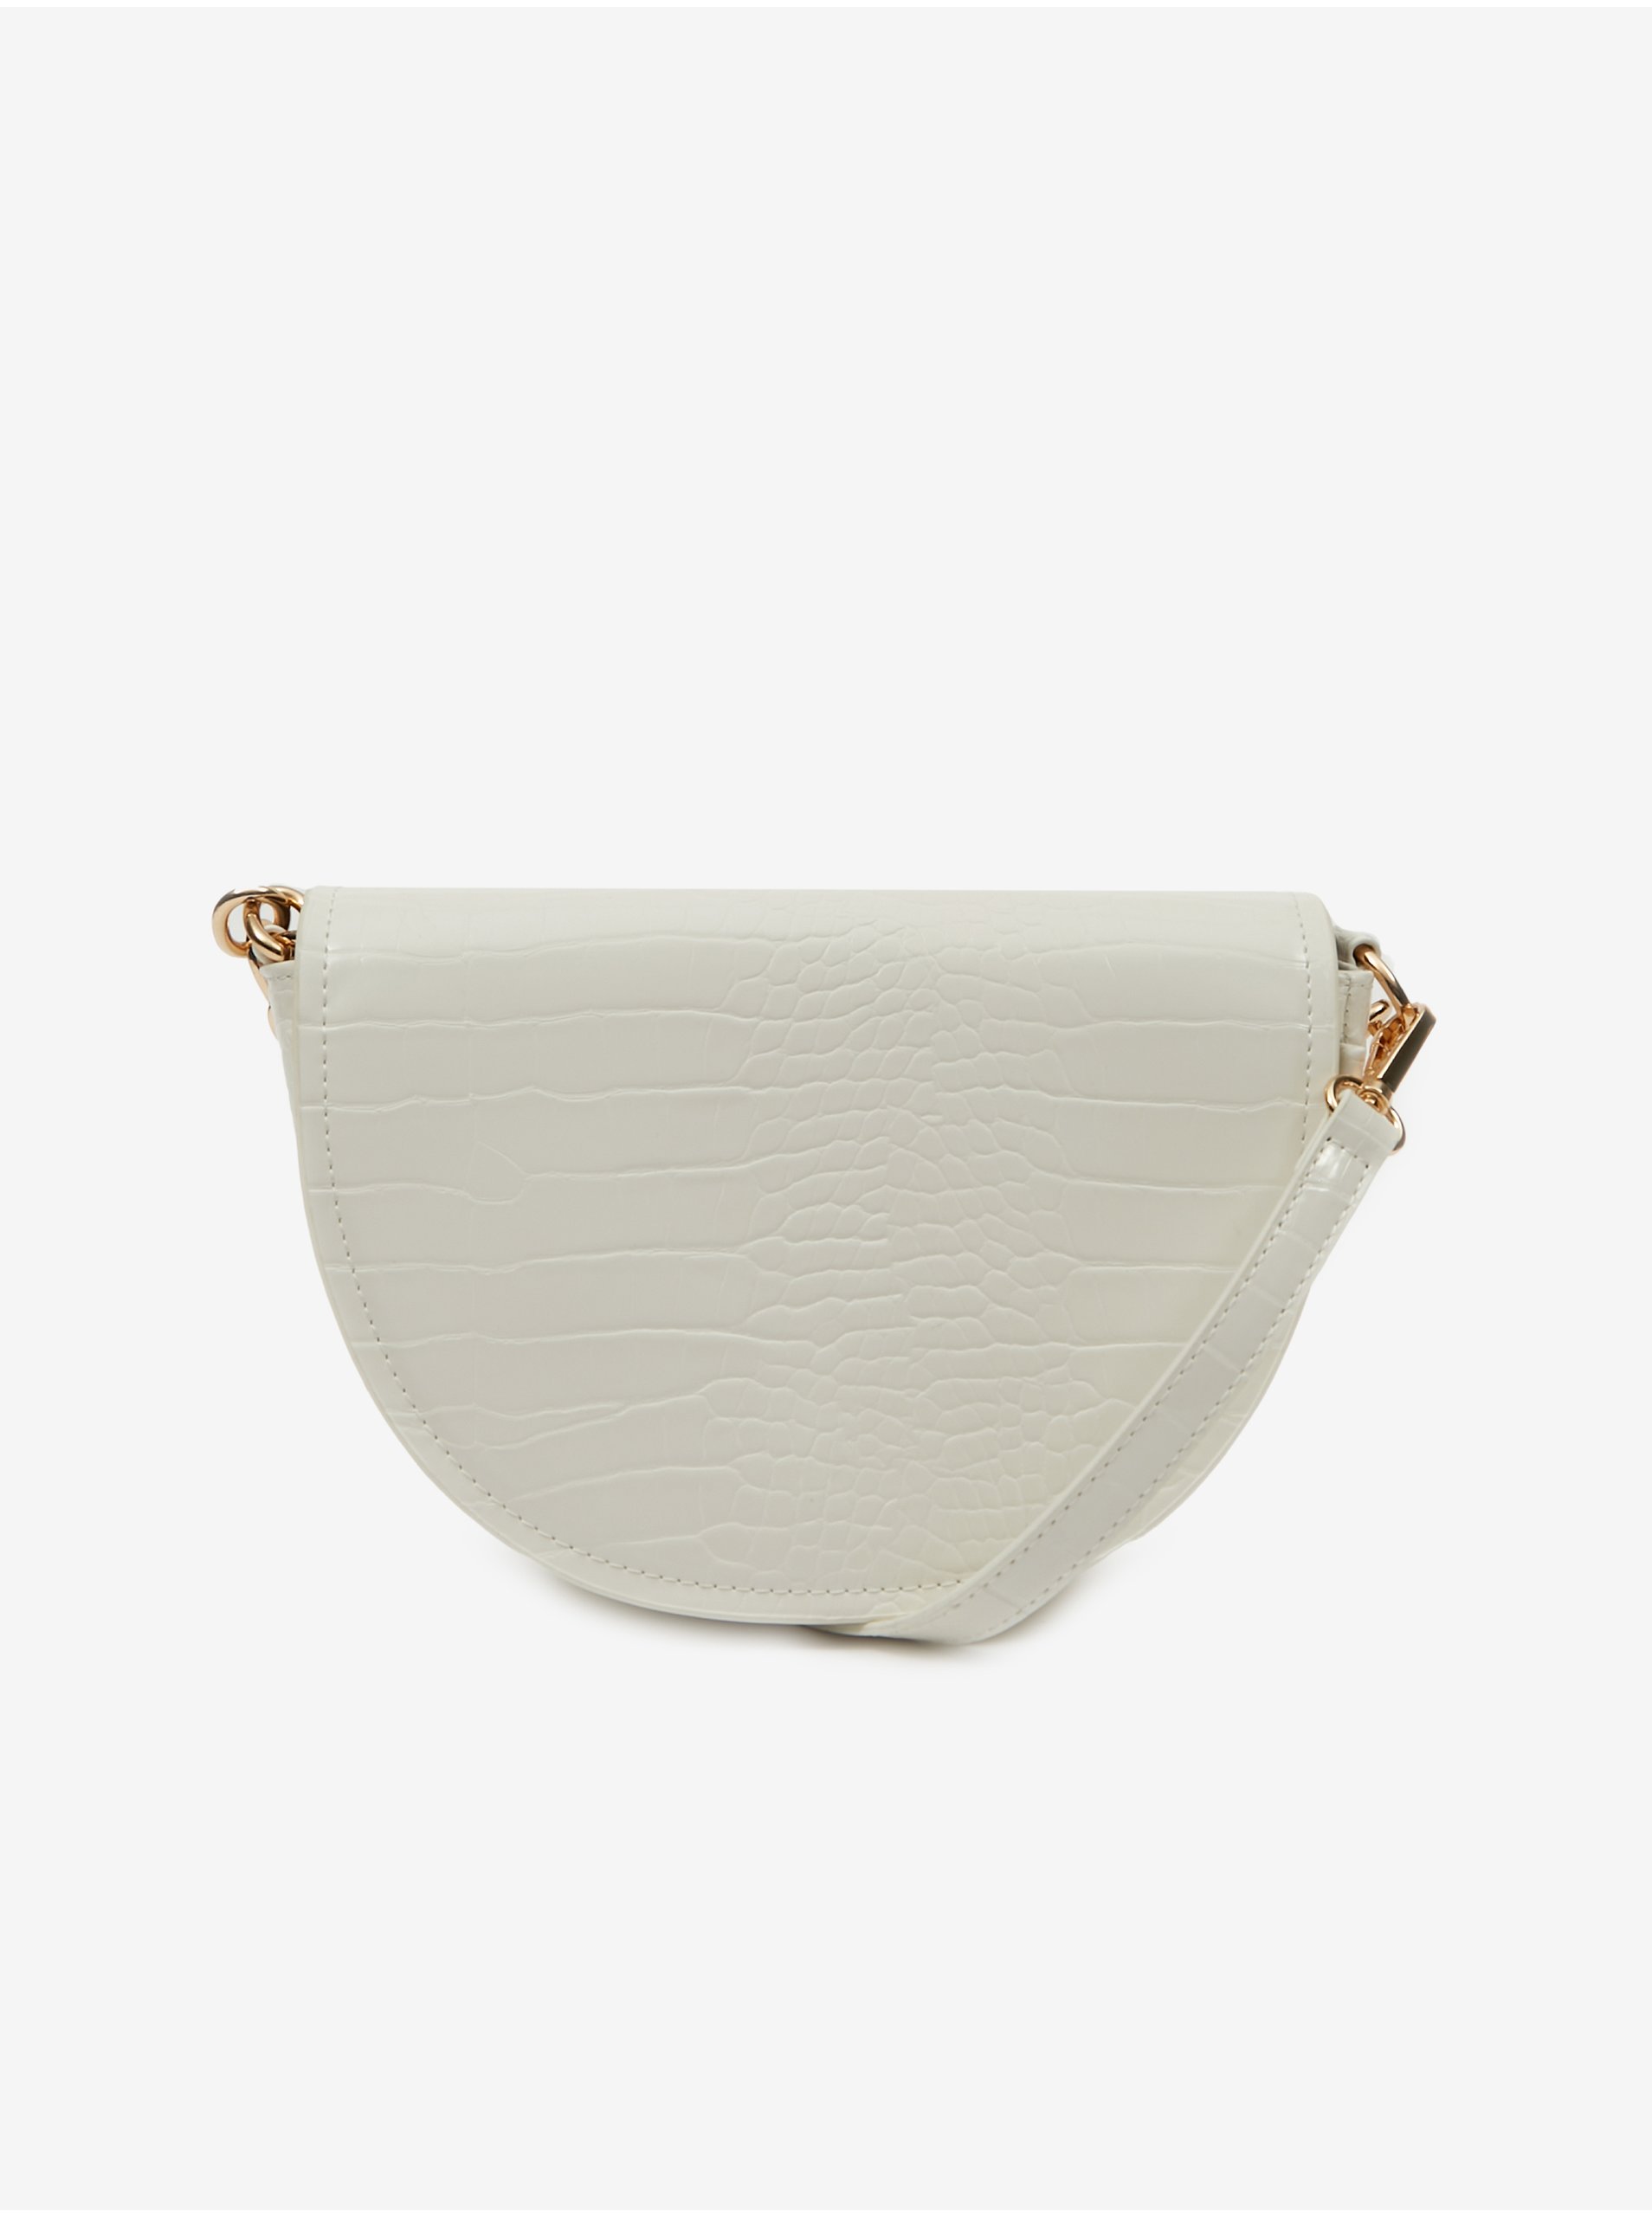 E-shop Bílá dámská kabelka s krokodýlím vzorem ORSAY